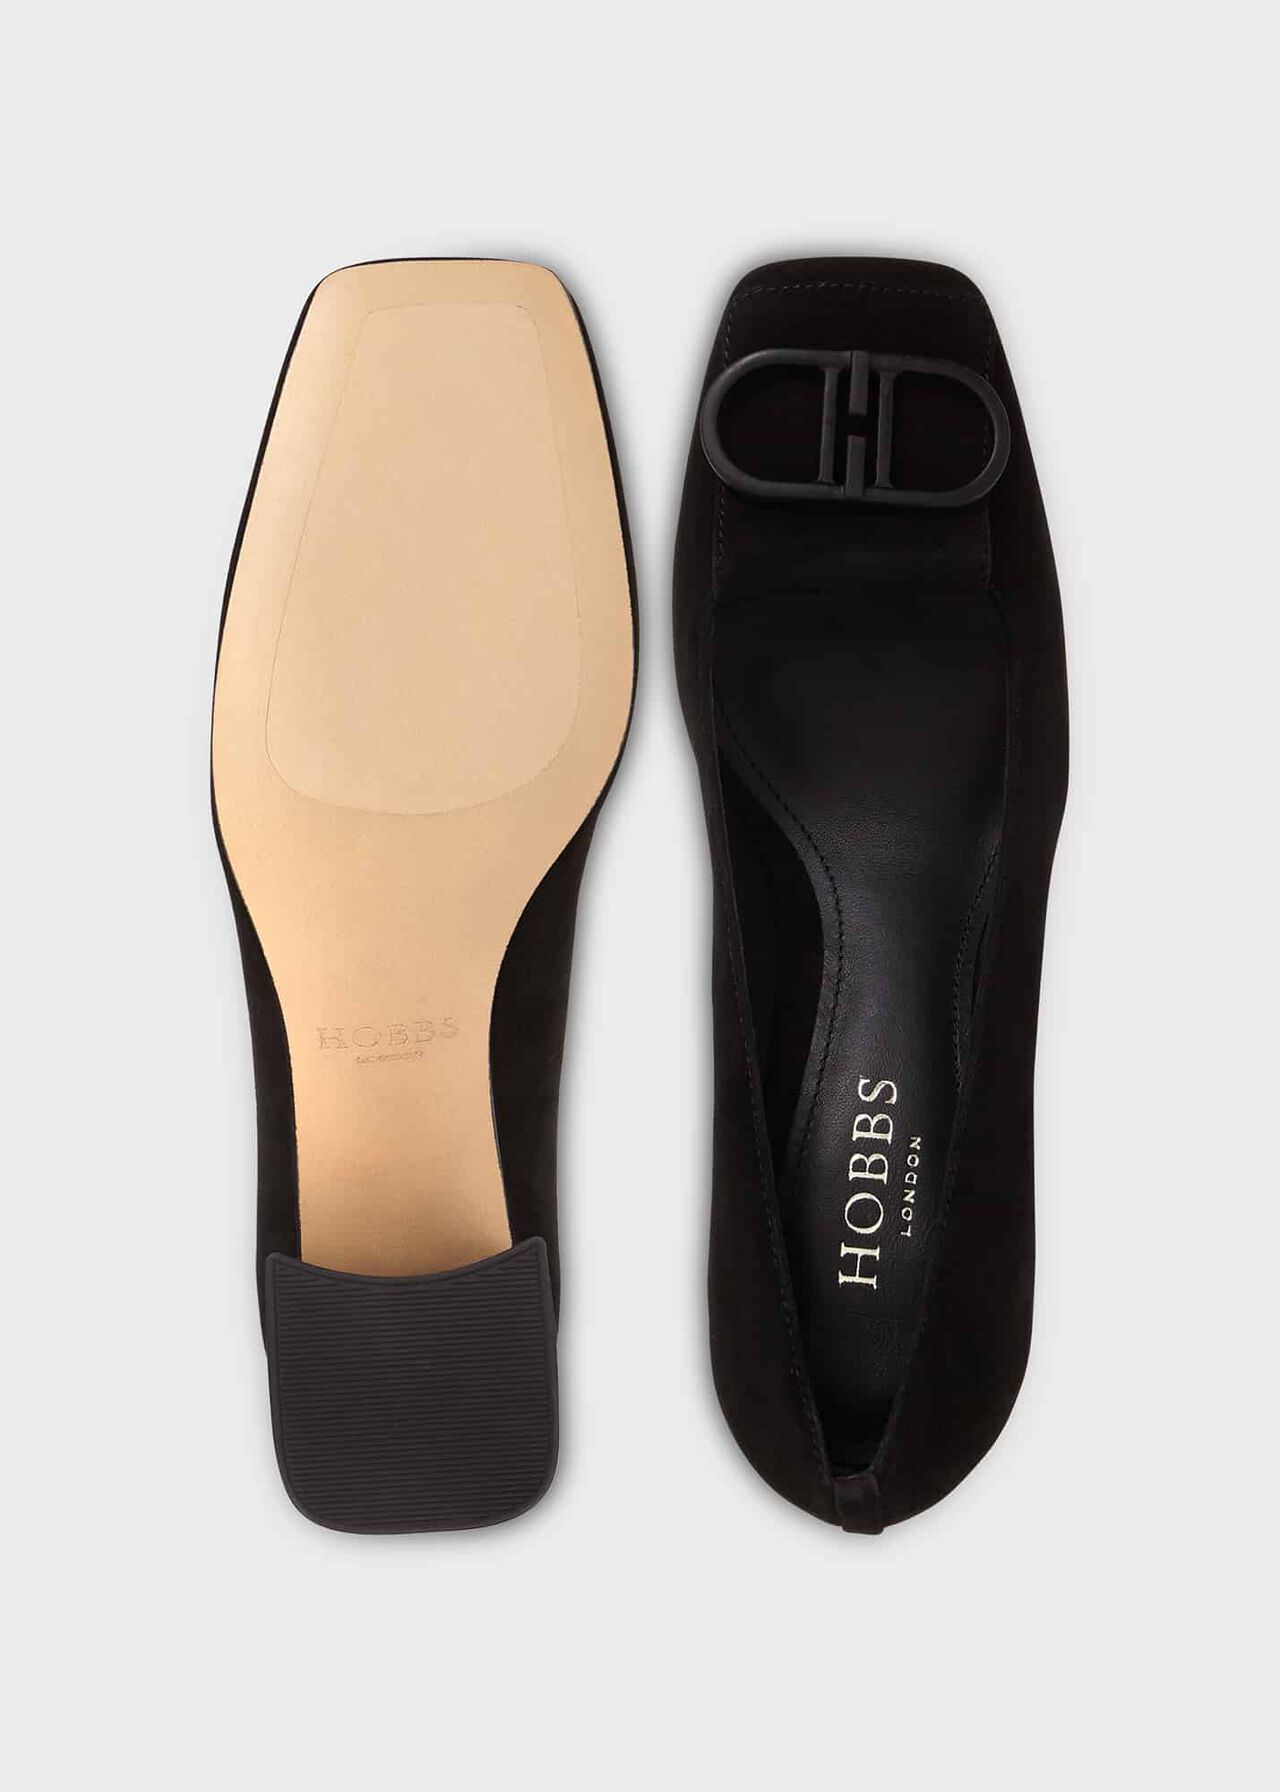 Lexia Court Shoes, Black, hi-res